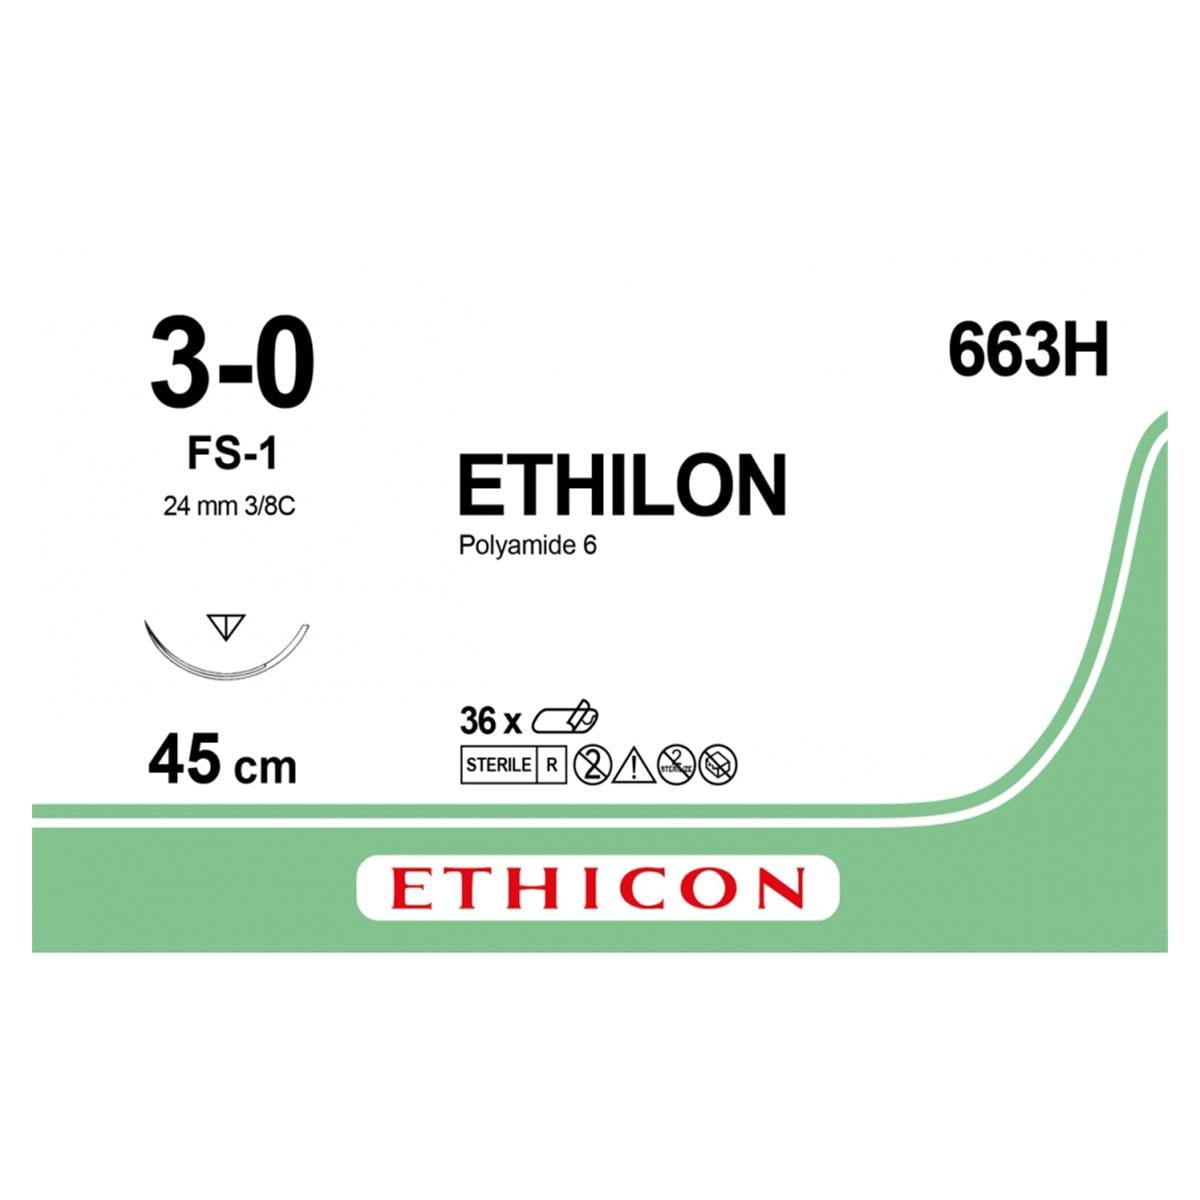 ETHILON schwarz, monofil - Nadeltyp FS1 - USP 3-0, Länge 0,45 m (663 H), Packung 36 Stück